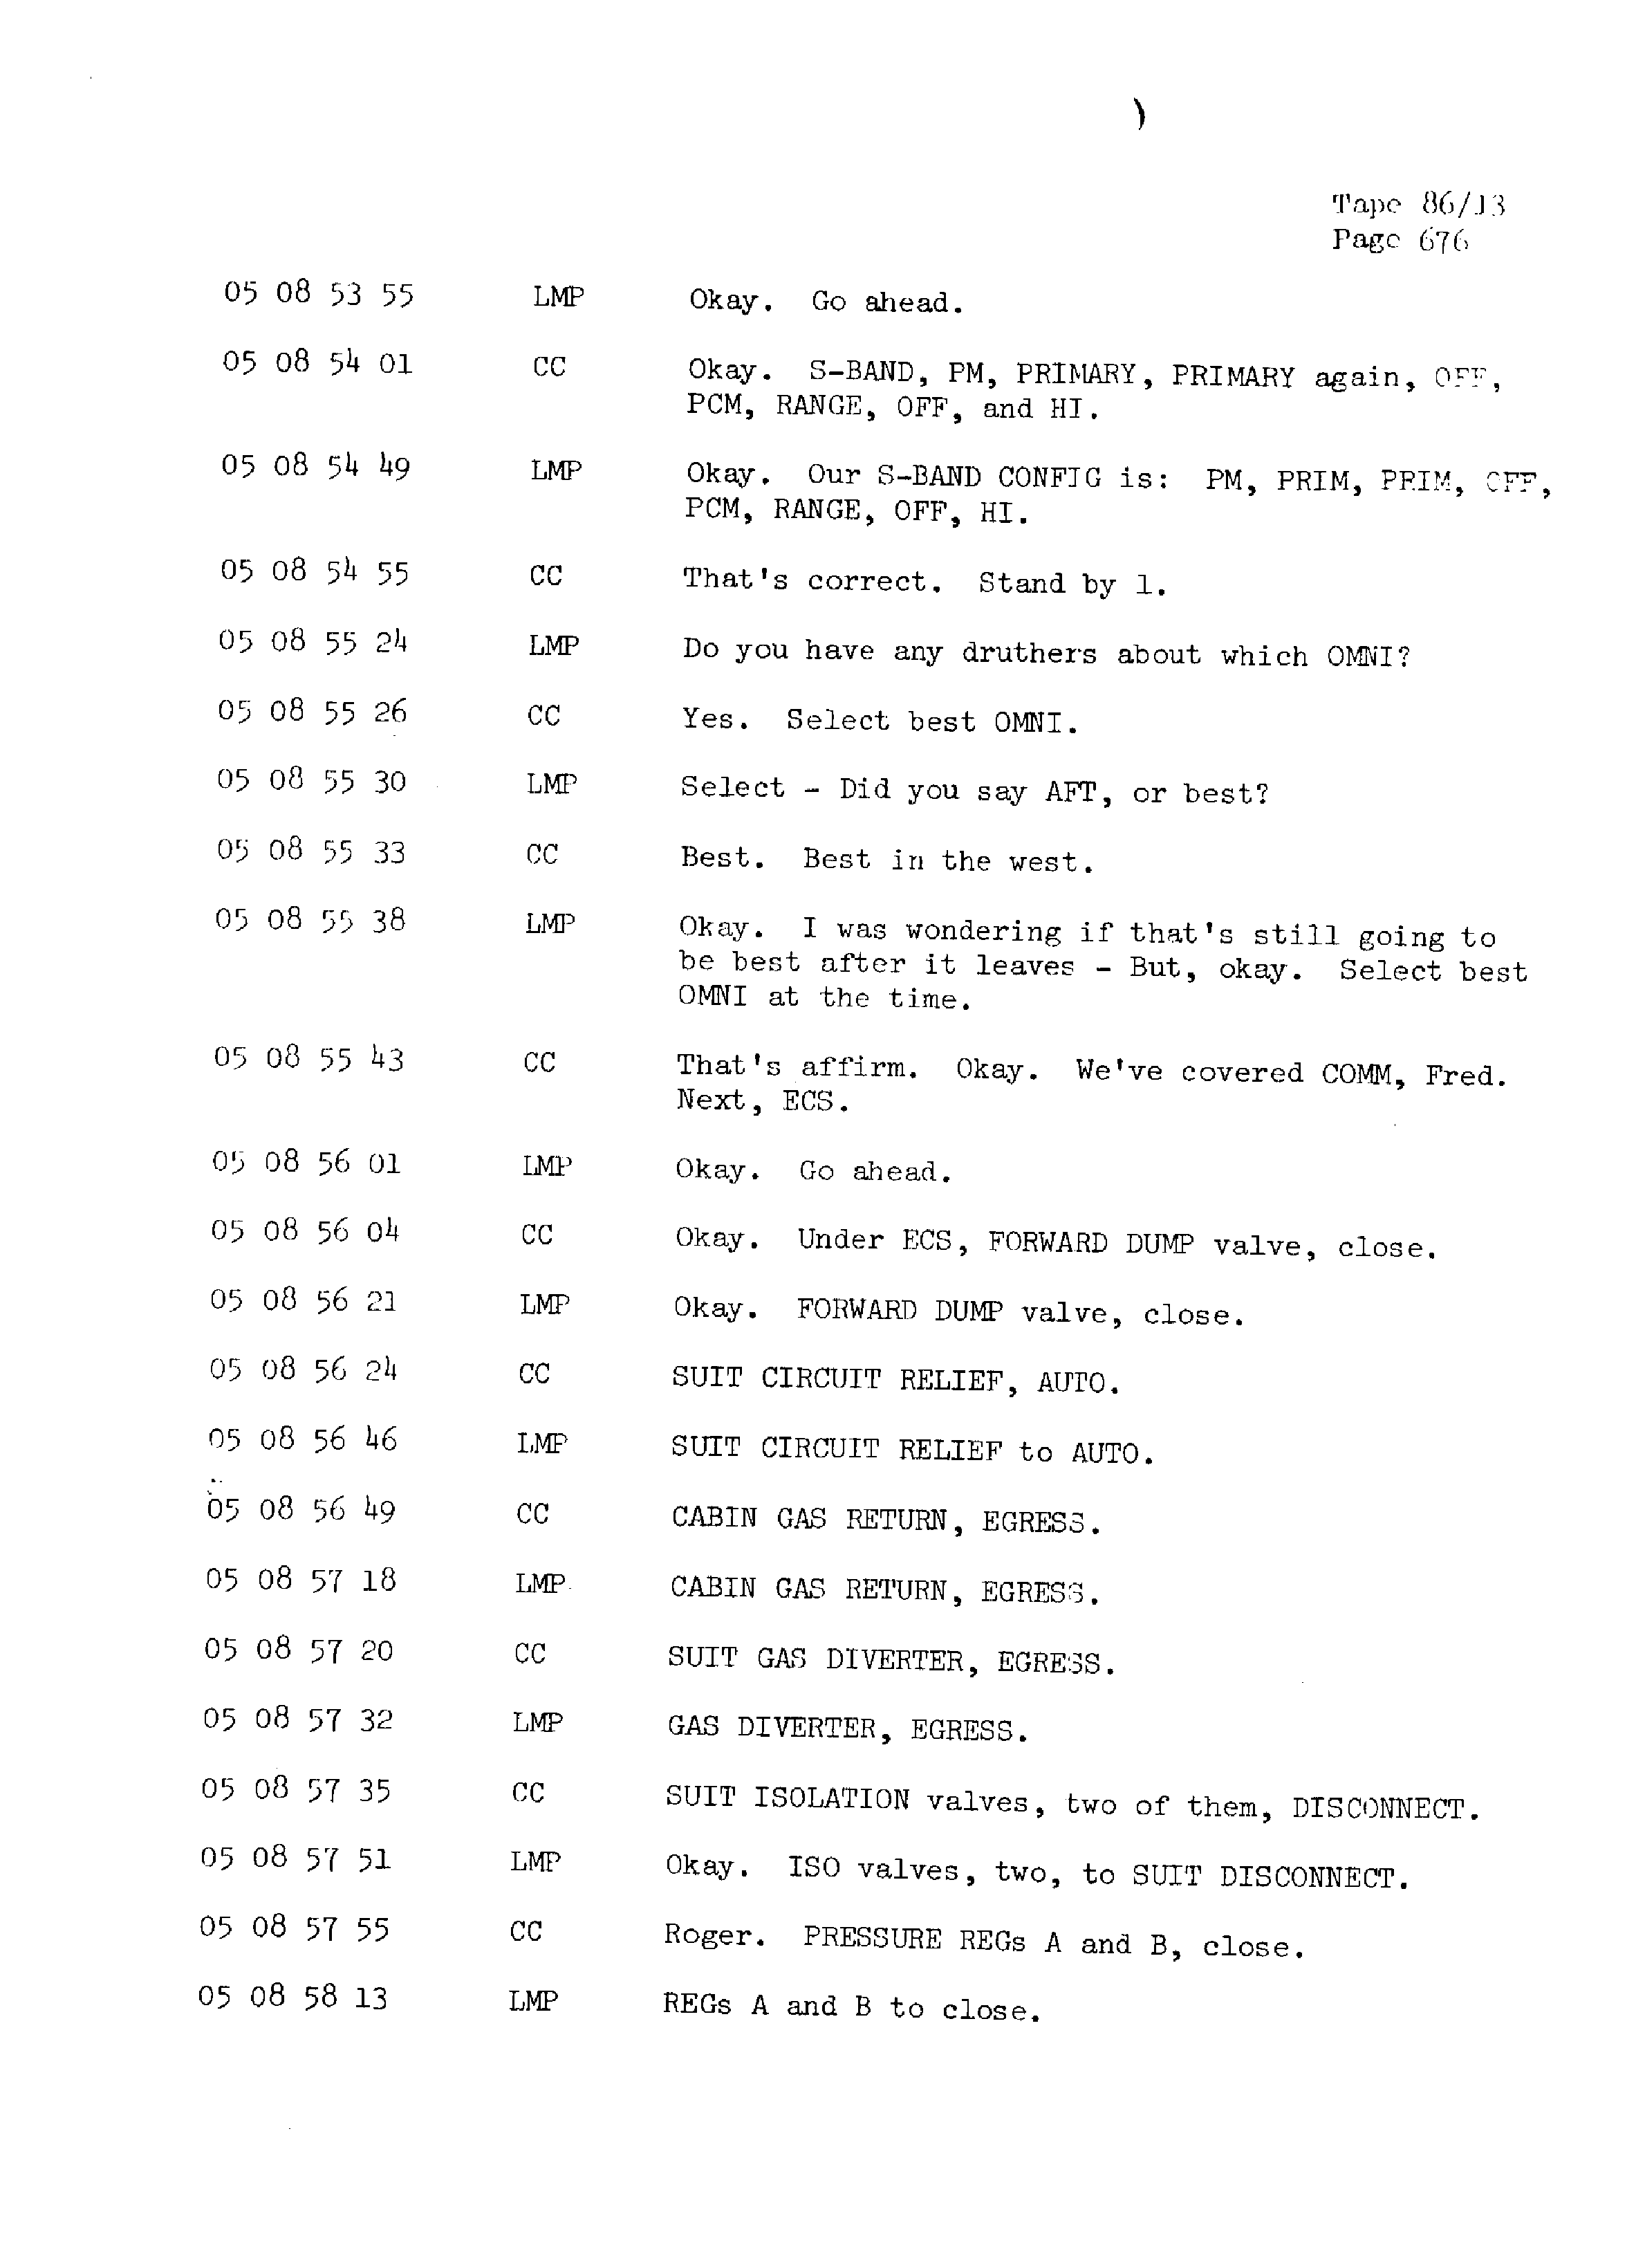 Page 683 of Apollo 13’s original transcript